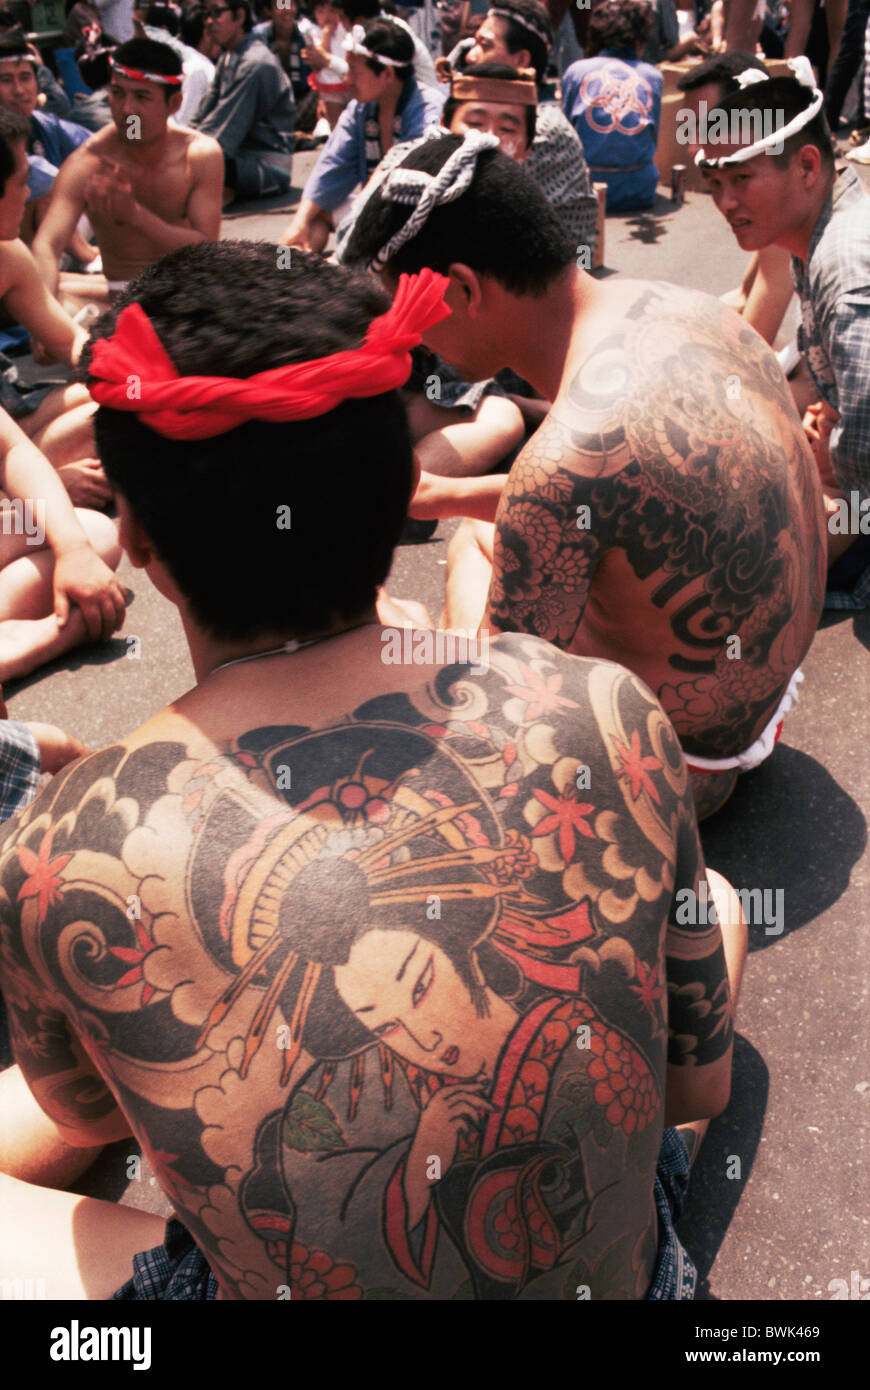 Asie Asie Japon Tokyo Honshu Gangster Yakuza Tattooed Man hommes tatoués tatouages Tatouage Body Tattoo Body Art Banque D'Images